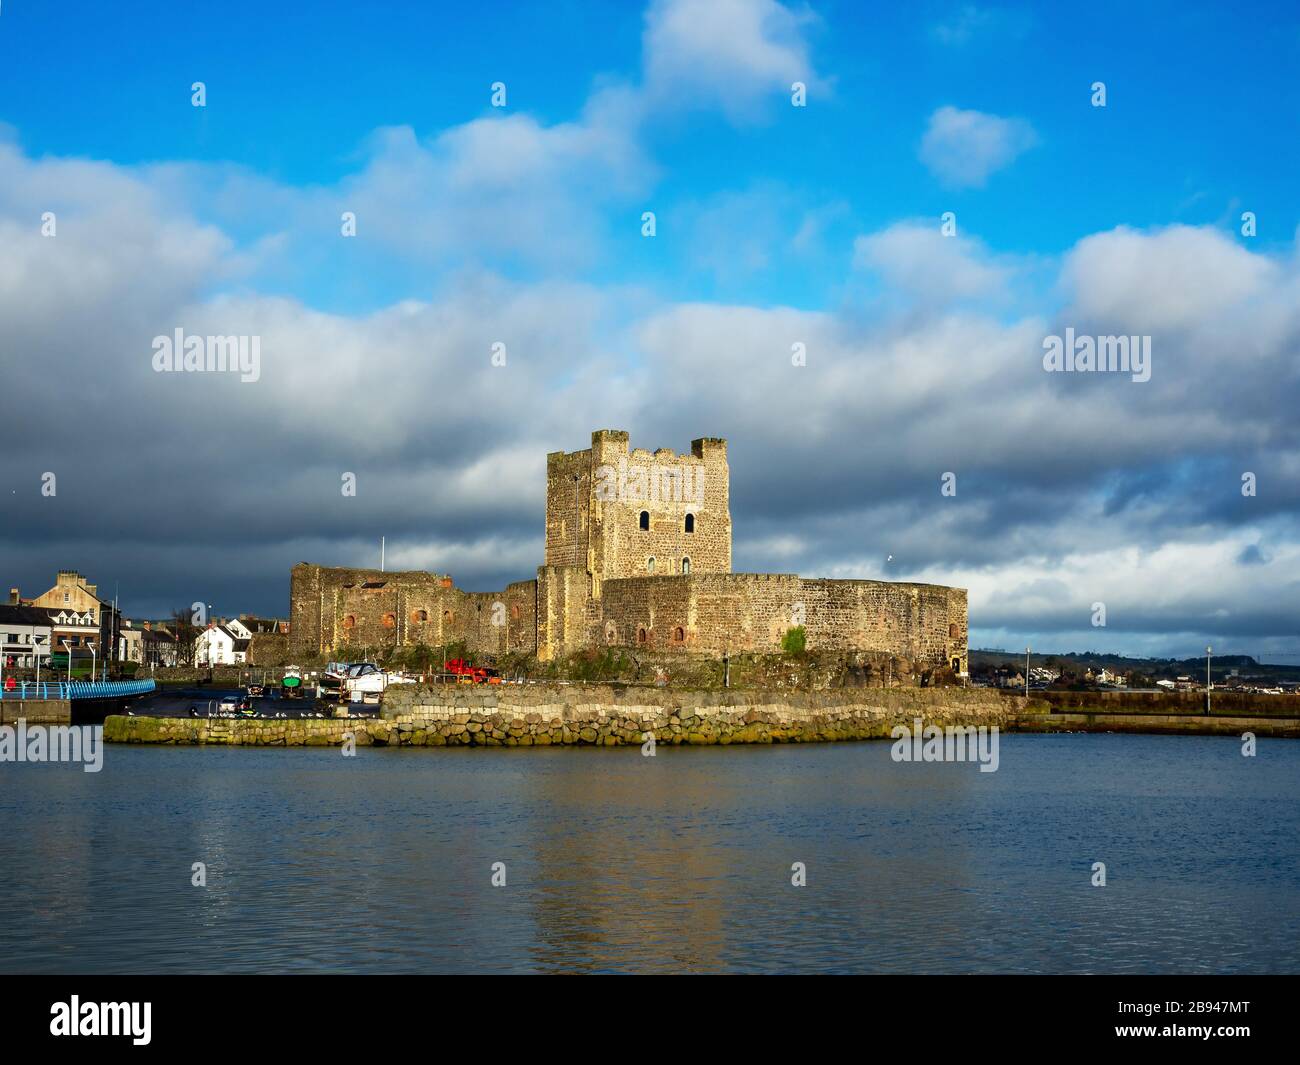 Castello Normanno medievale a Carrickfergus vicino a Belfast, Irlanda del Nord, con marina in inverno. Cielo drammatico con nuvole tempestose scure. Luce del tramonto Foto Stock